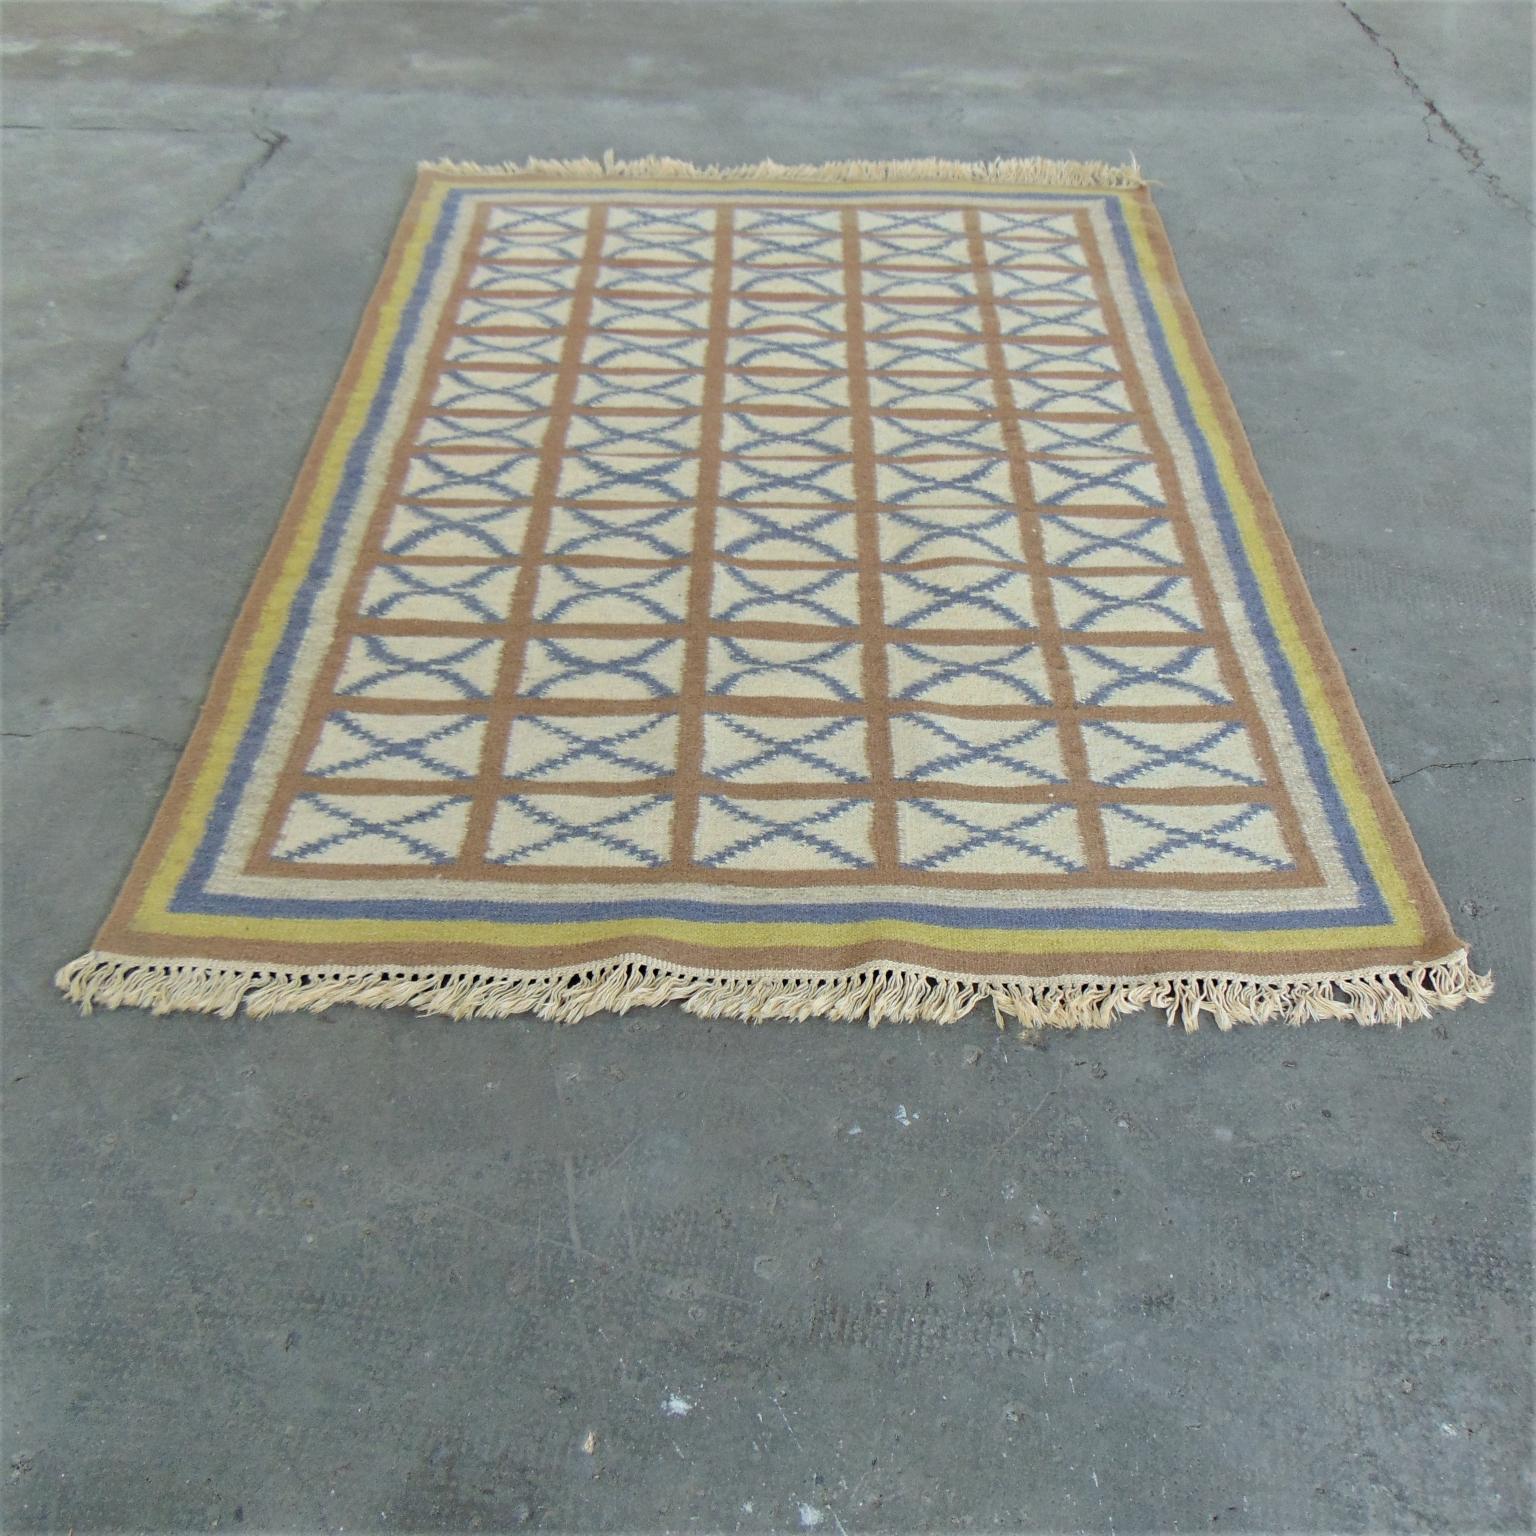 Dieser alte Teppich wurde Mitte der 1970er Jahre aus Indien nach Italien importiert. Es ist handgewebt, mit einer weichen Mischung aus warmen Farben wie Gelb und Hellbraun auf einem elfenbeinfarbenen Hintergrund, der durch ein blaues Muster